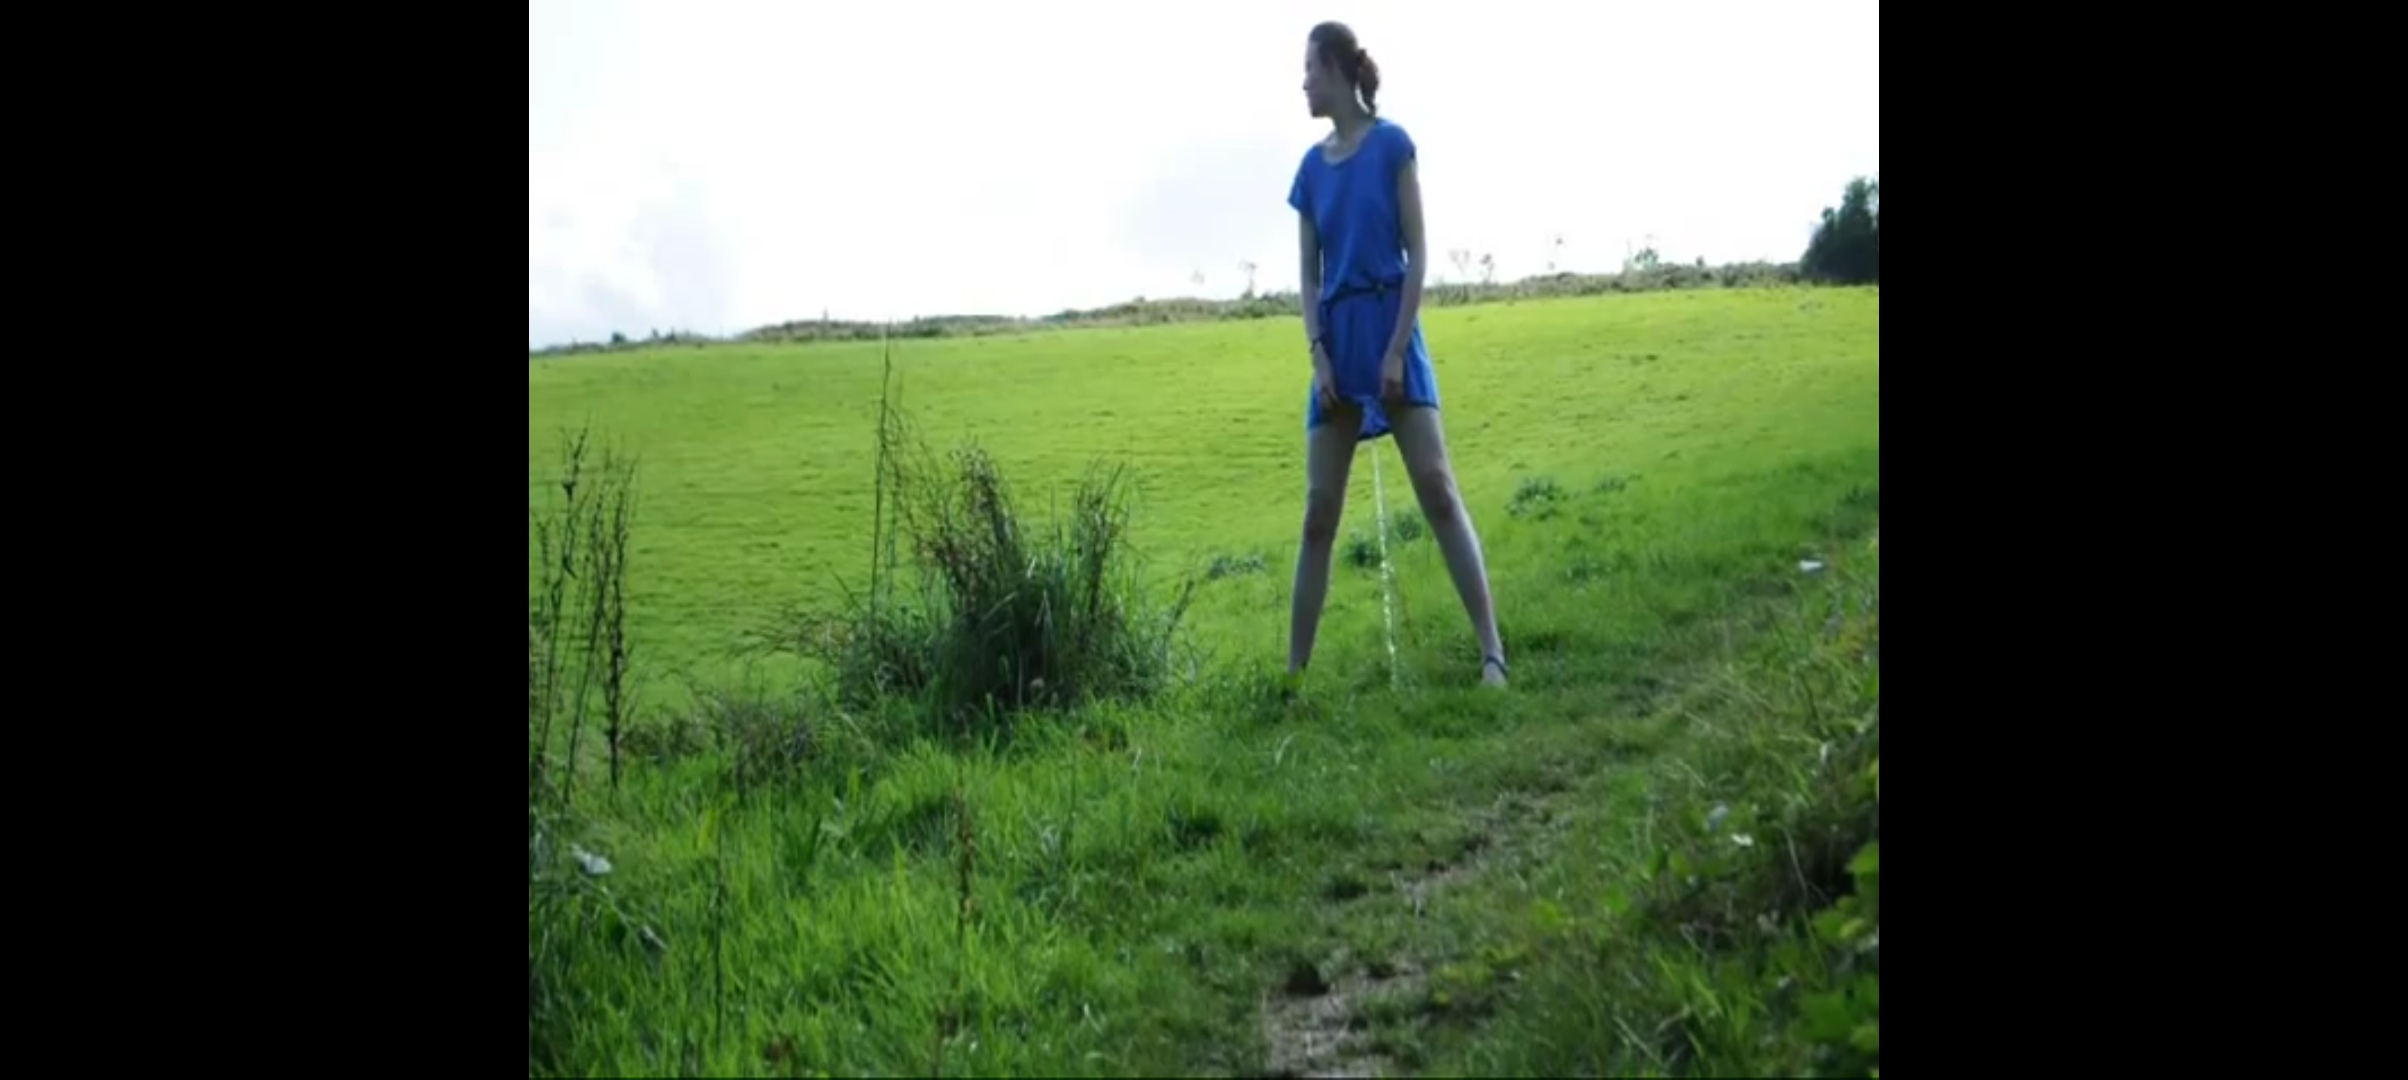 Pee standing in a field